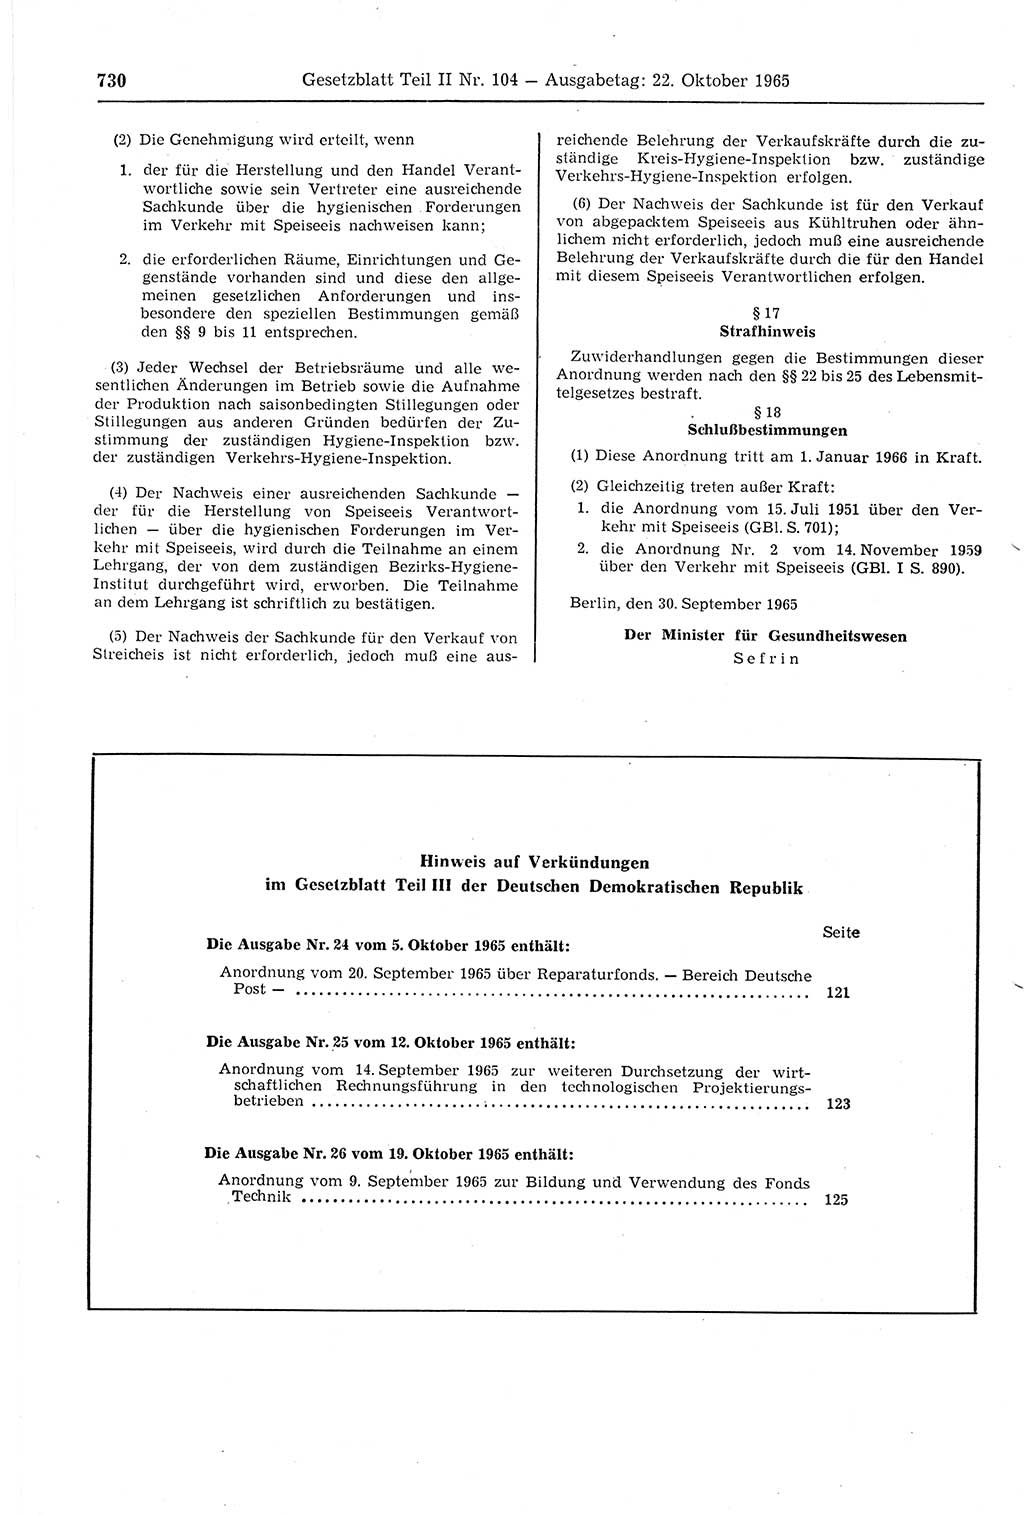 Gesetzblatt (GBl.) der Deutschen Demokratischen Republik (DDR) Teil ⅠⅠ 1965, Seite 730 (GBl. DDR ⅠⅠ 1965, S. 730)